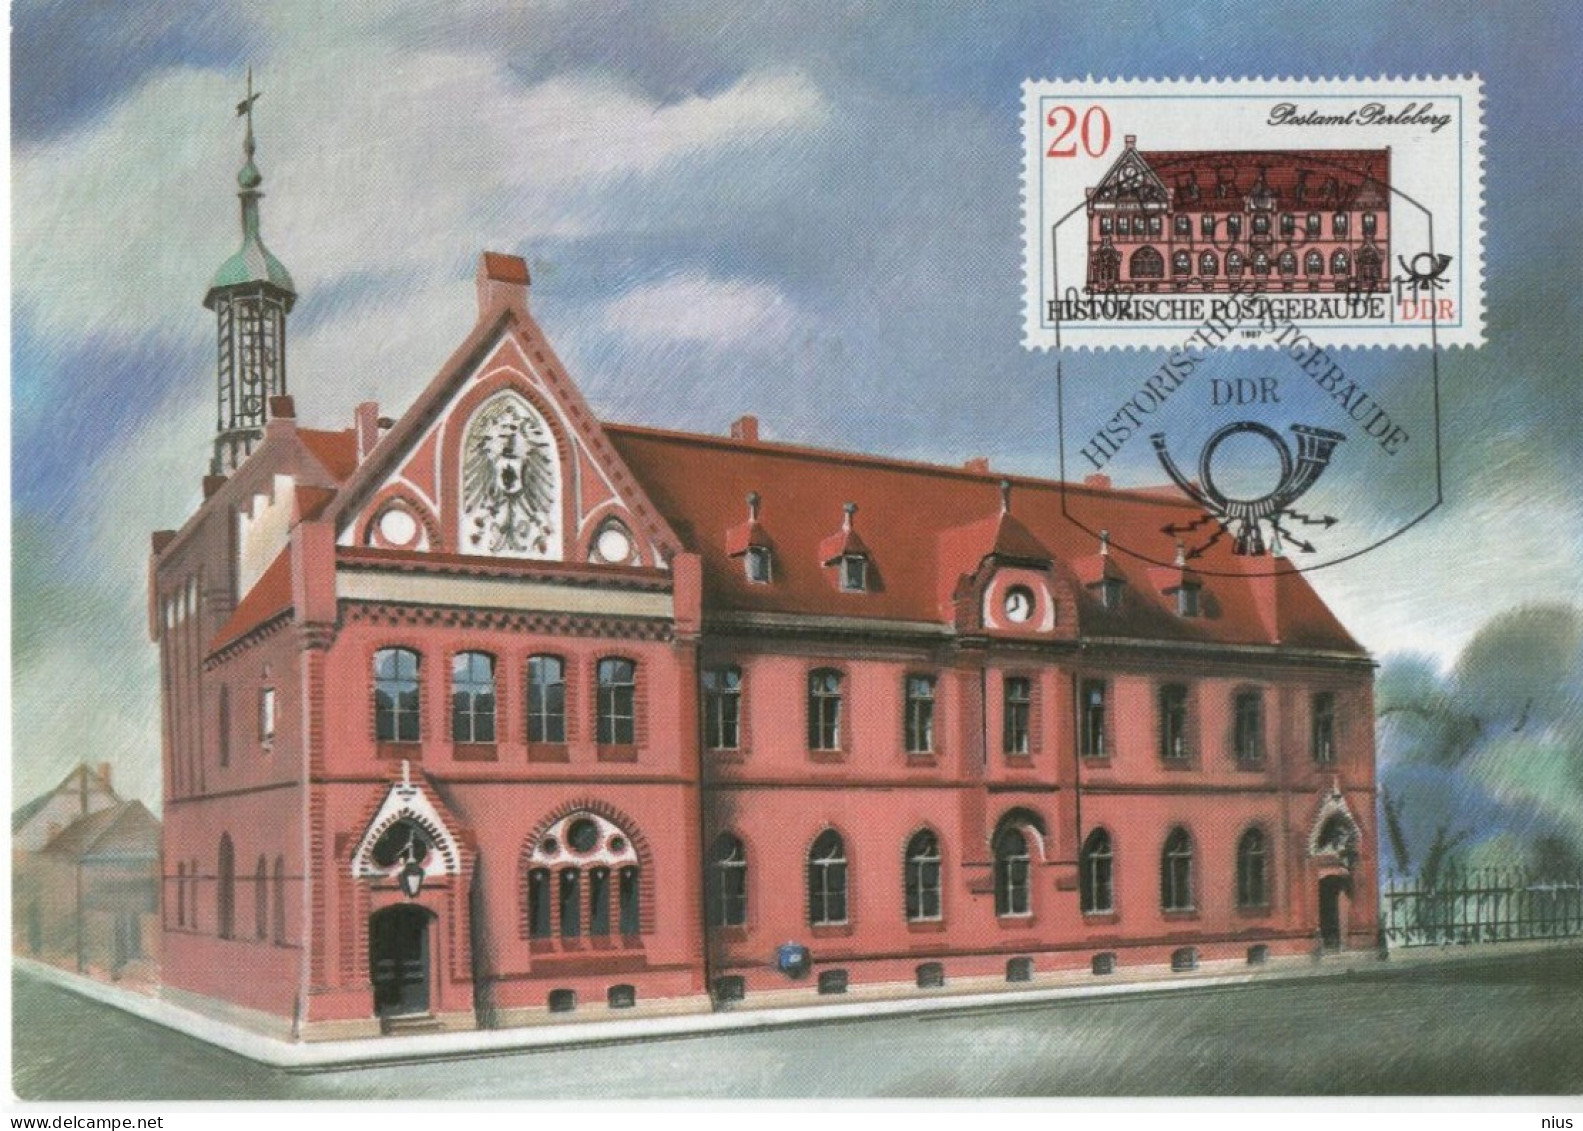 Germany Deutschland DDR 1987 Maximum Card Historische Postgebaude Historic Post Office Building Postamt Perleberg Berlin - Maximumkaarten